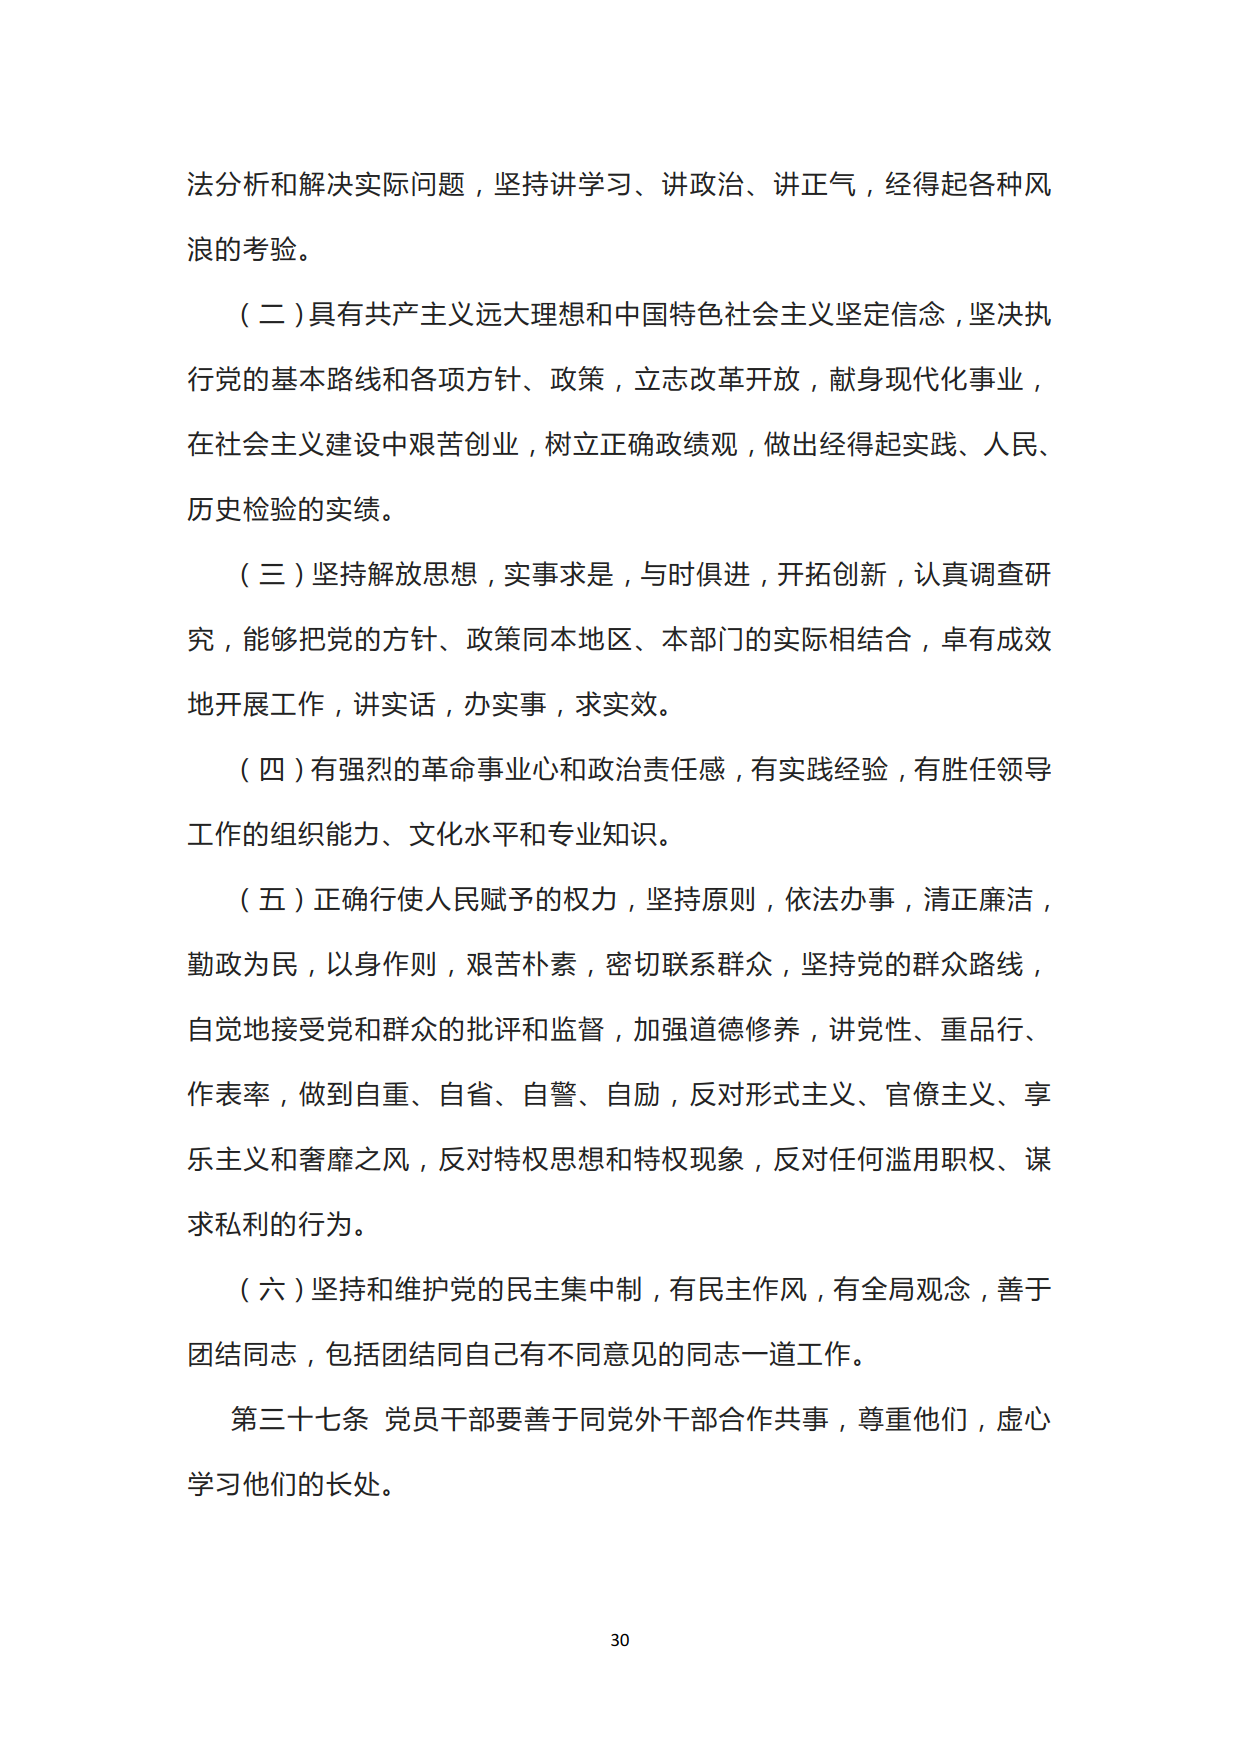 中国共产党章程_30.png